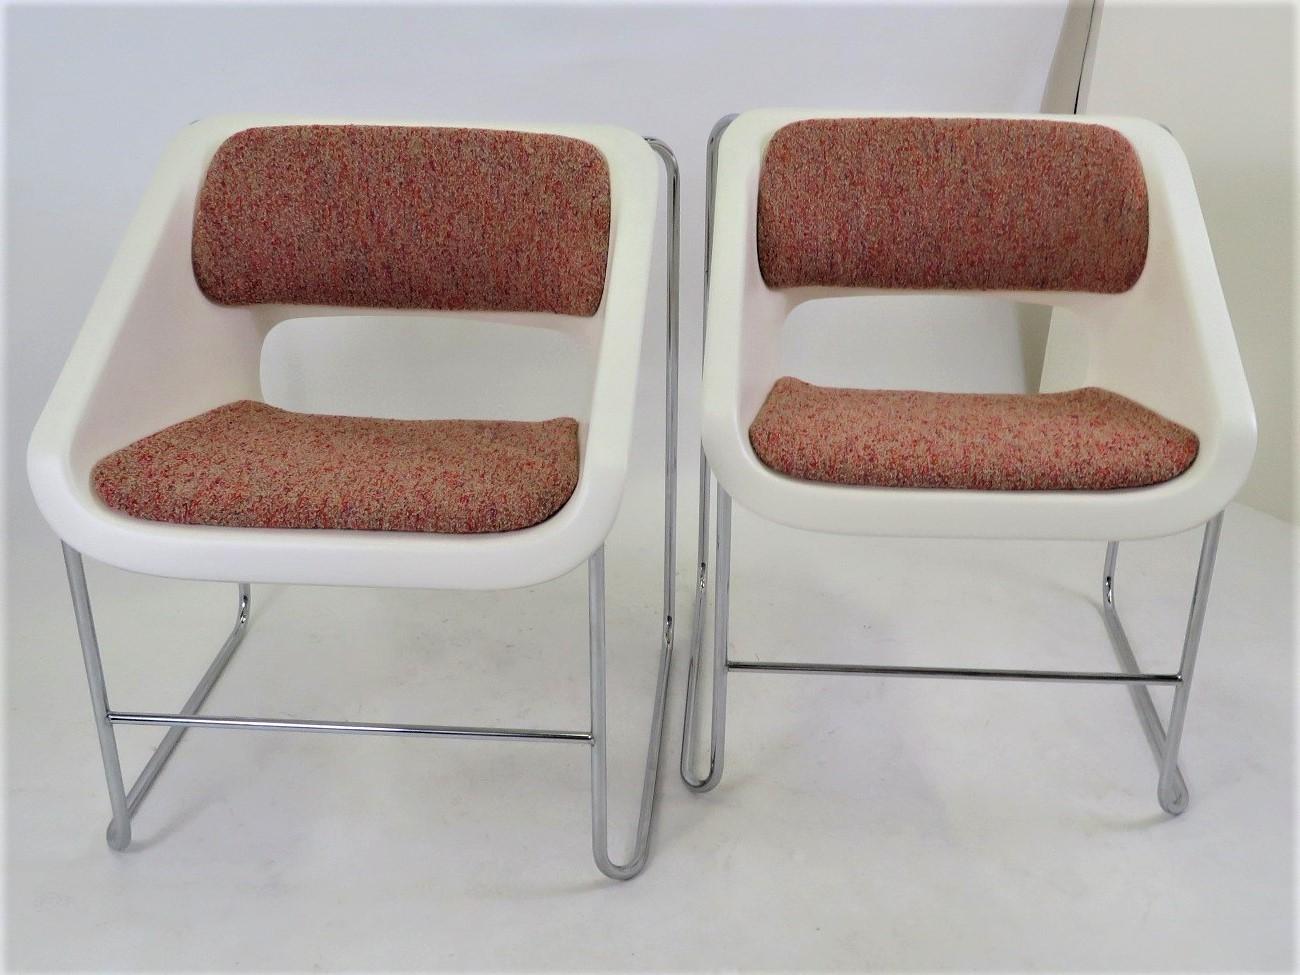 Paire de fauteuils Space Age Mid Century Modern créés par Paul Boulva pour les Jeux Olympiques de Montréal en 1976 et produits par Artopex au Canada. Les chaises présentent une structure en métal chromé avec un siège en plastique moulé:: le dossier